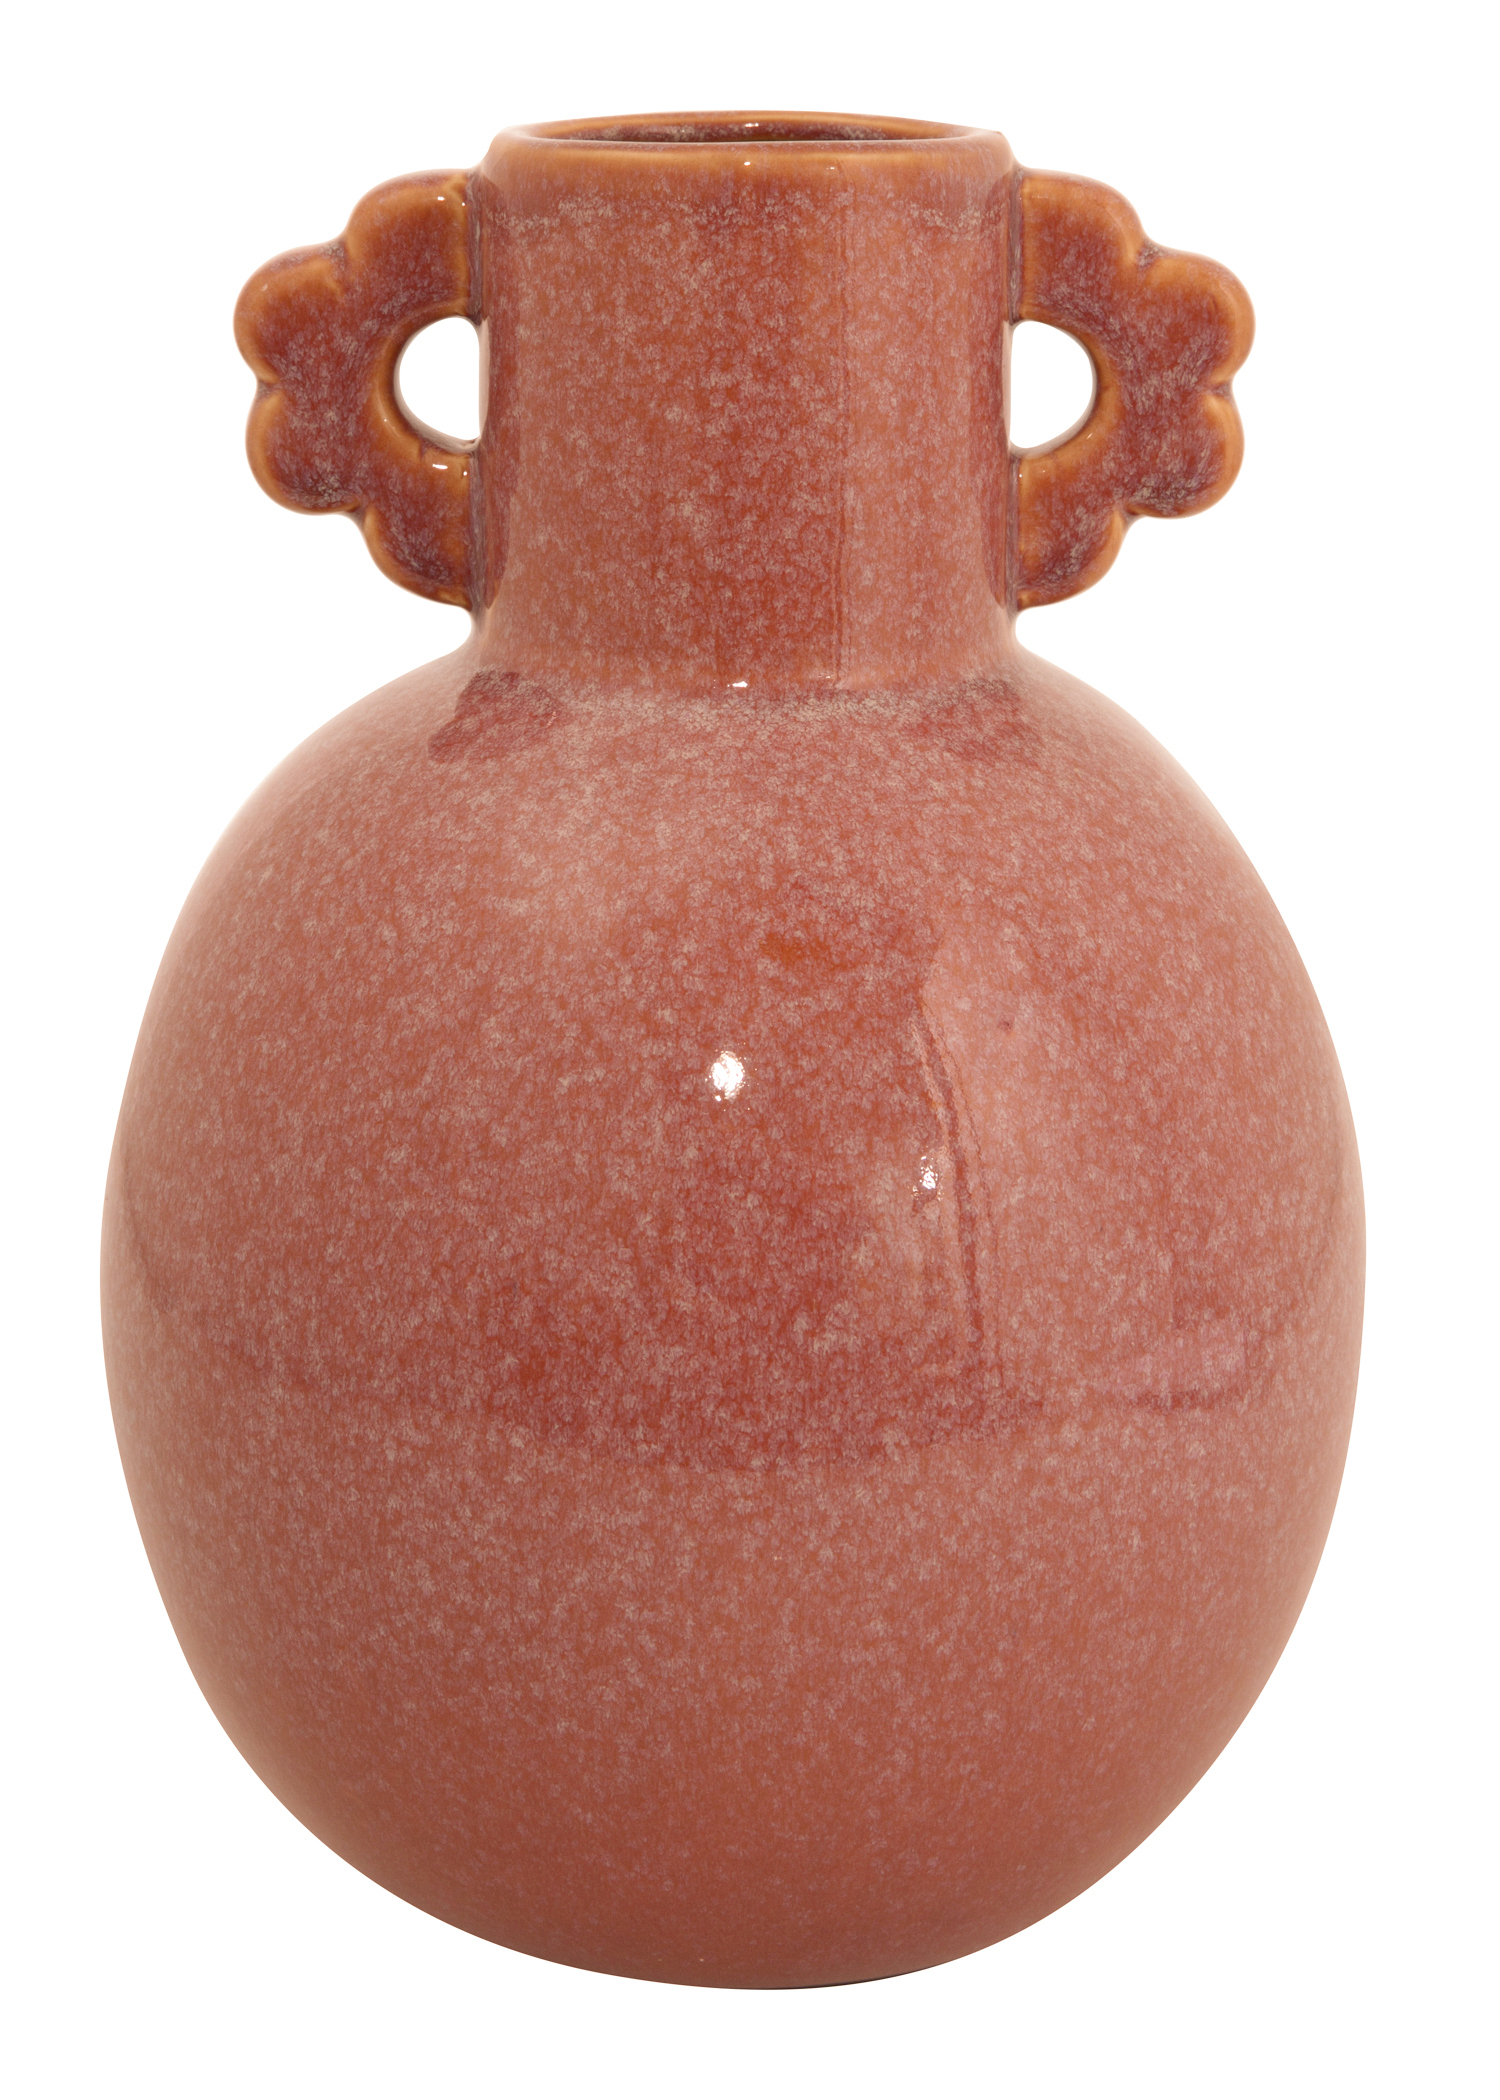 Rust decorative vase